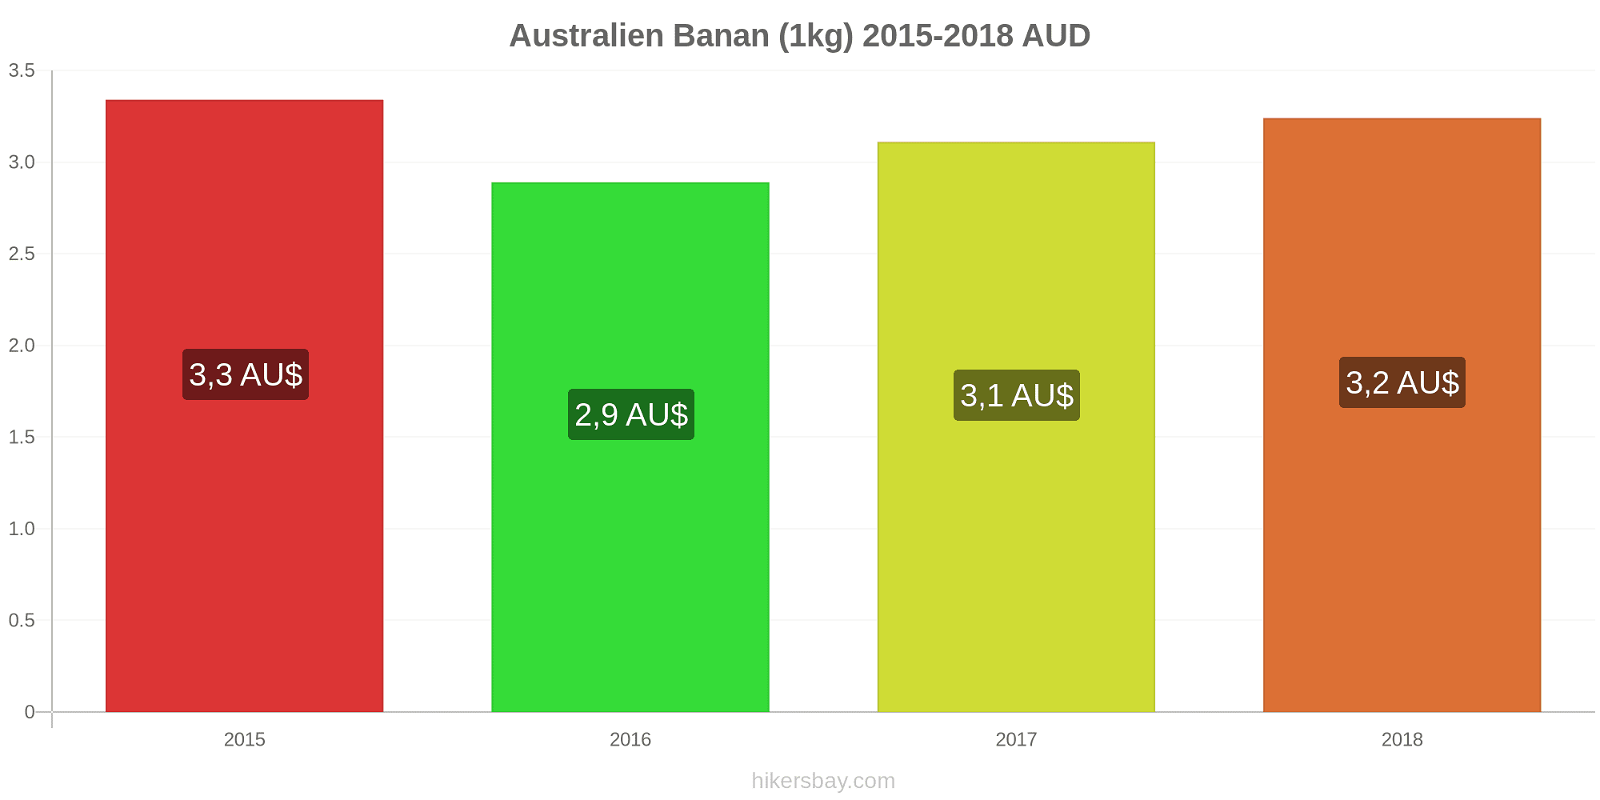 Australien prisændringer Bananer (1kg) hikersbay.com